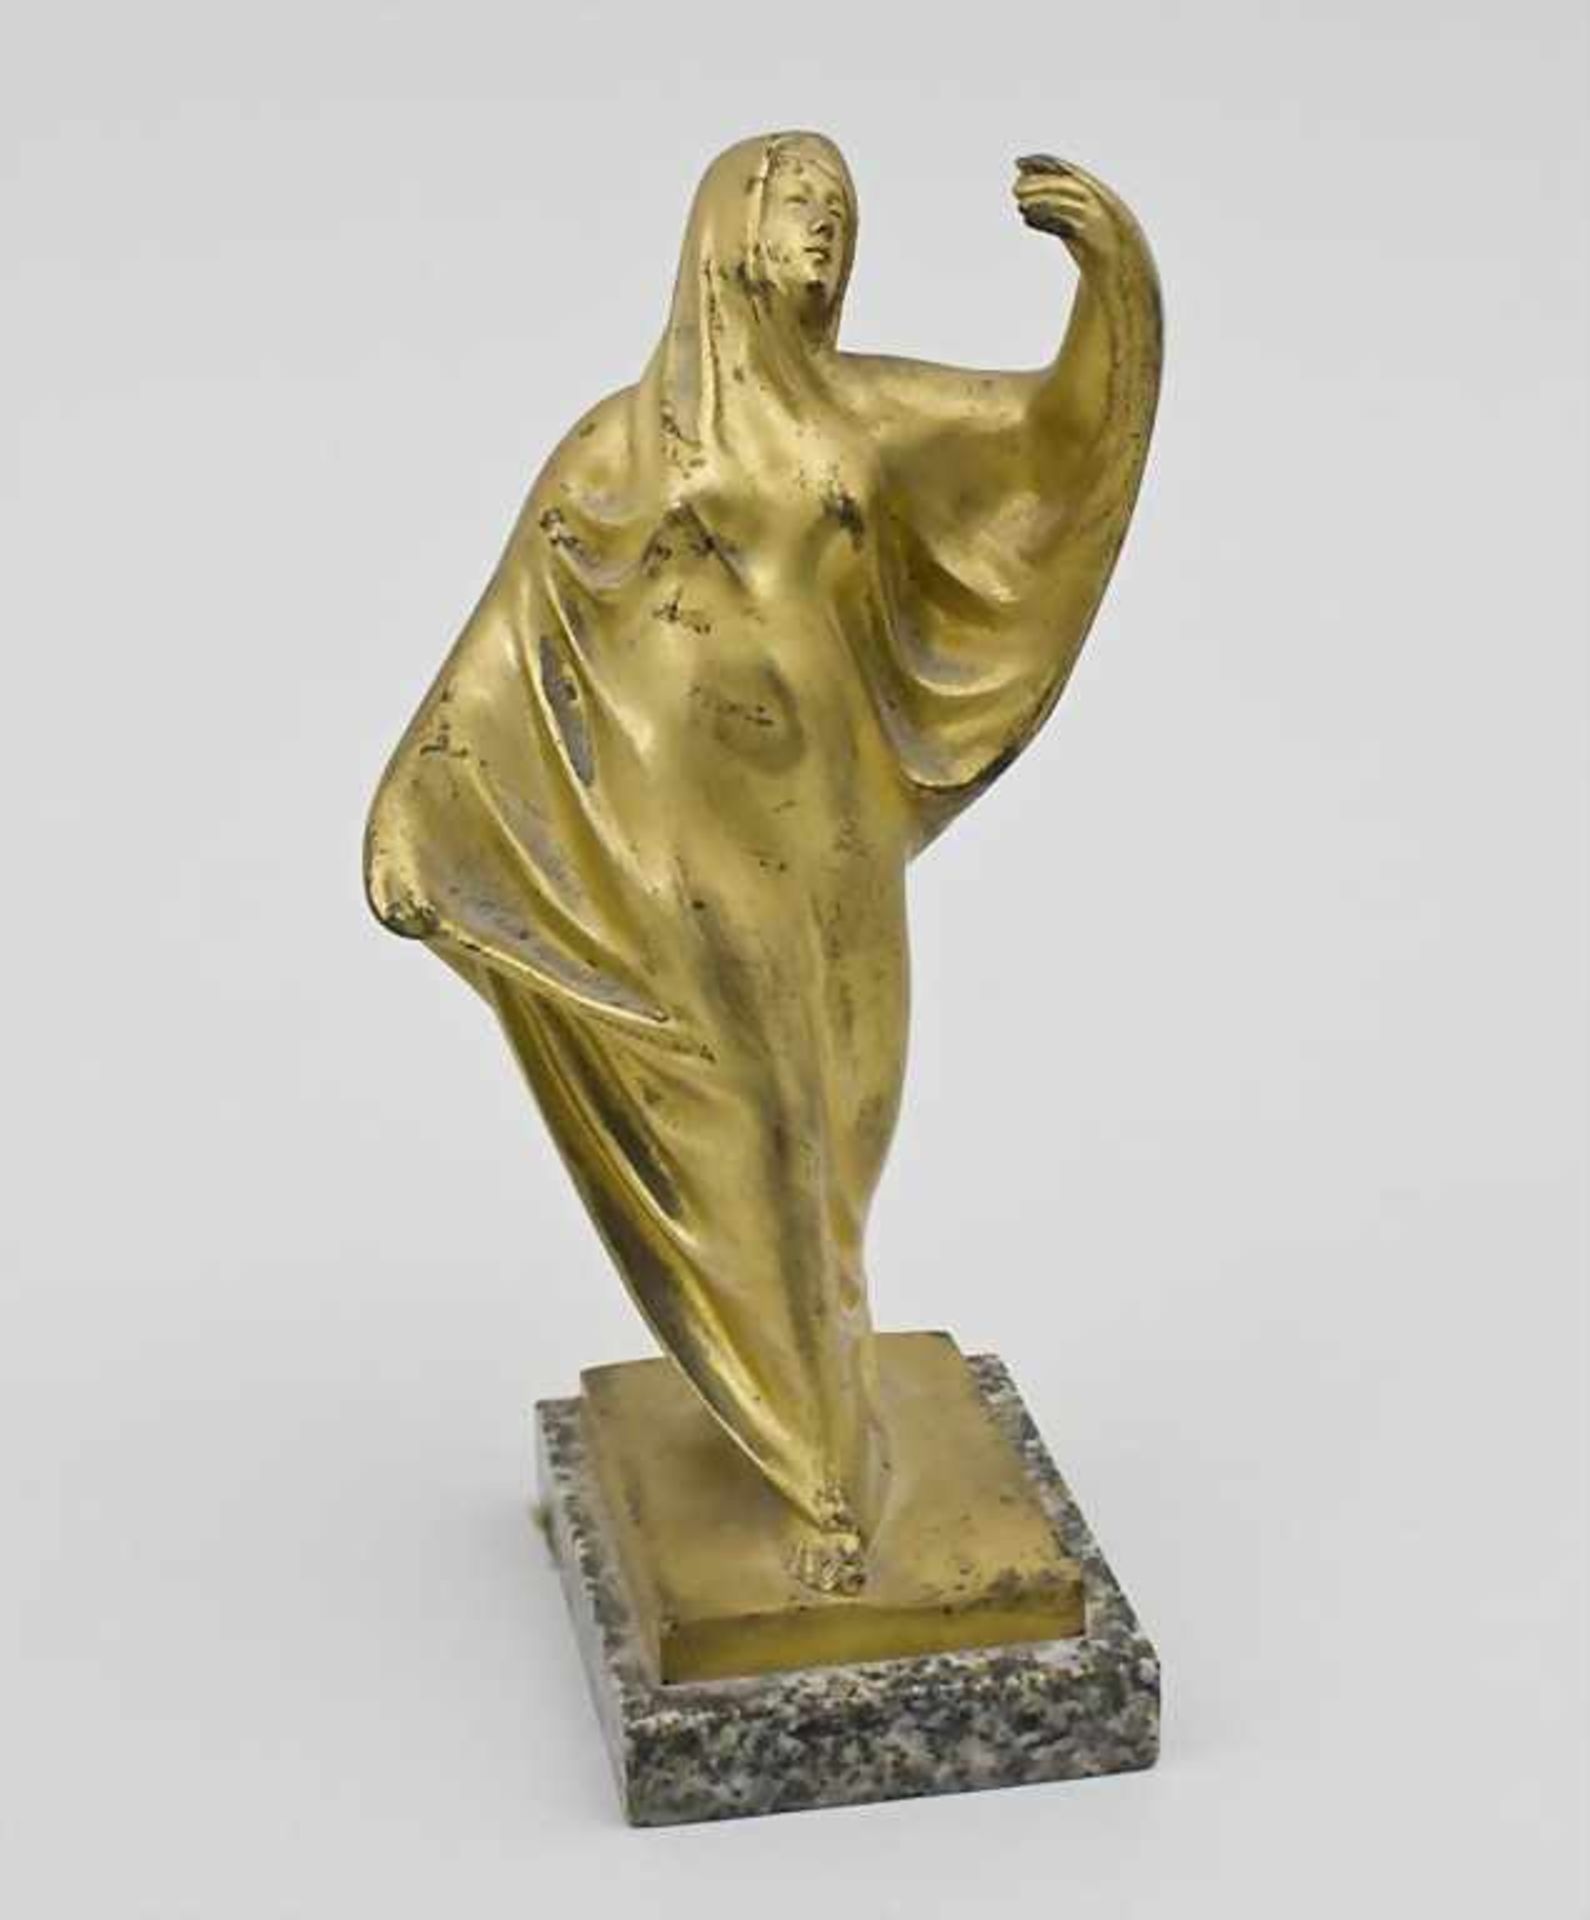 Orientalin/Art Nouveau Bronze Sculpture Of An Oriental Woman, Frankreich, um 1900auf rechteckigem